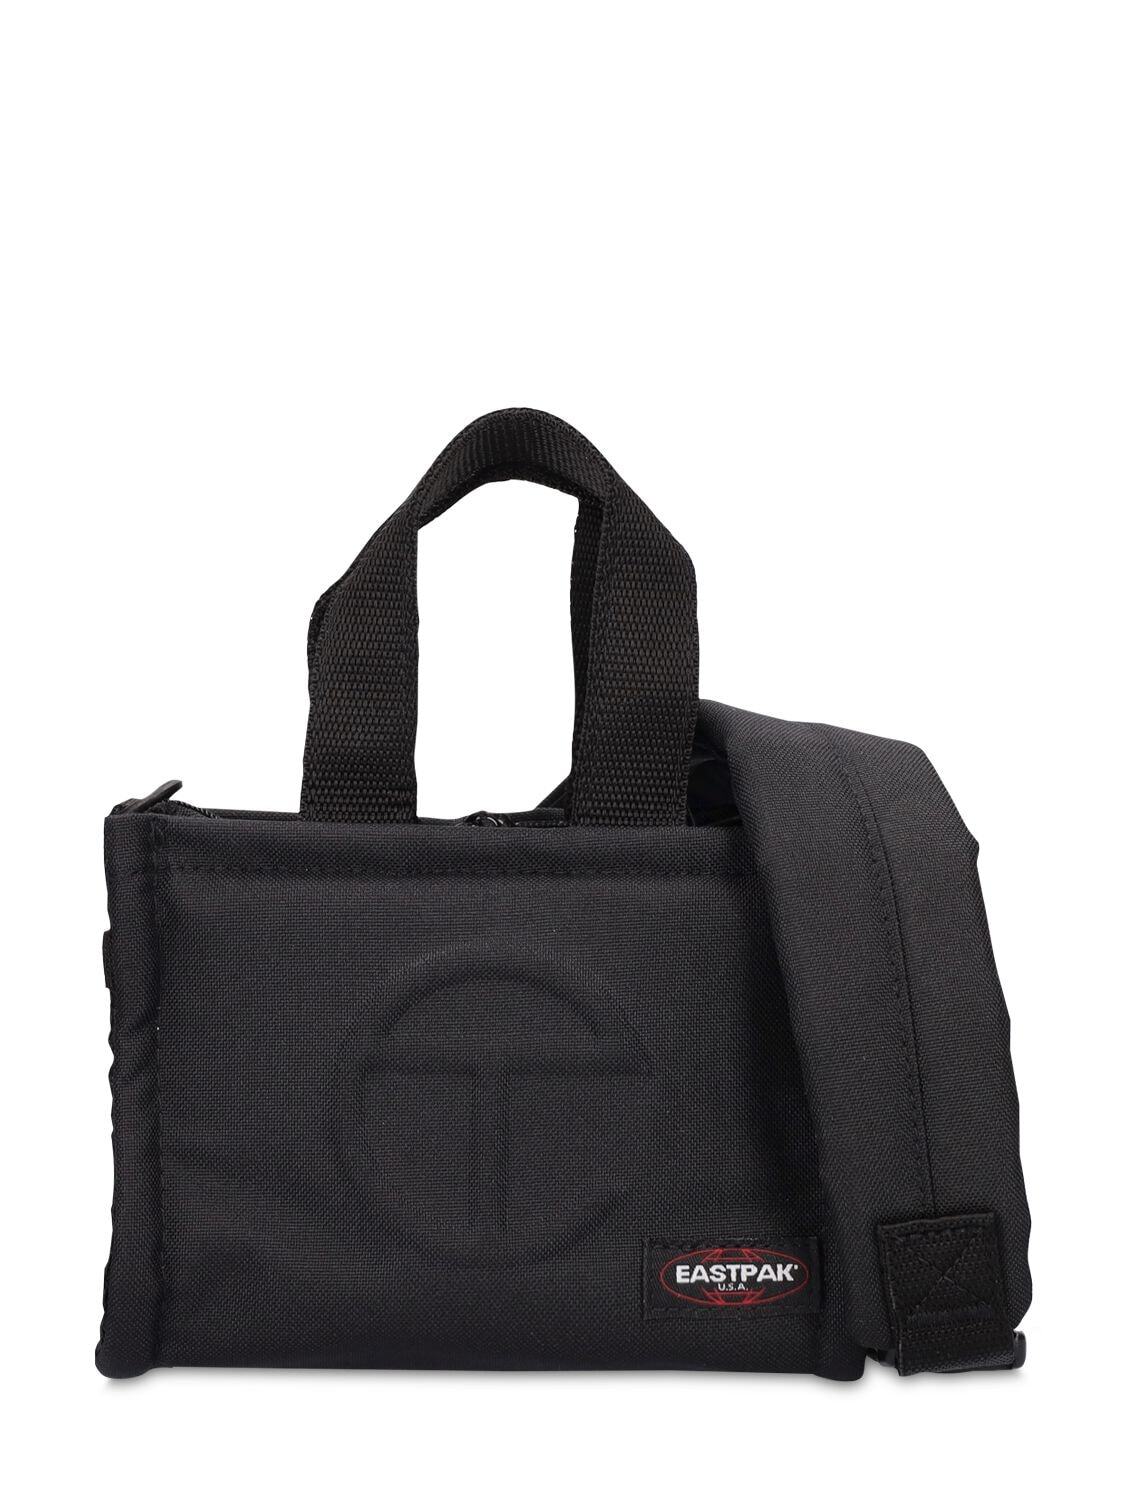 EASTPAK X TELFAR Small Telfar Shopper Nylon Bag in black